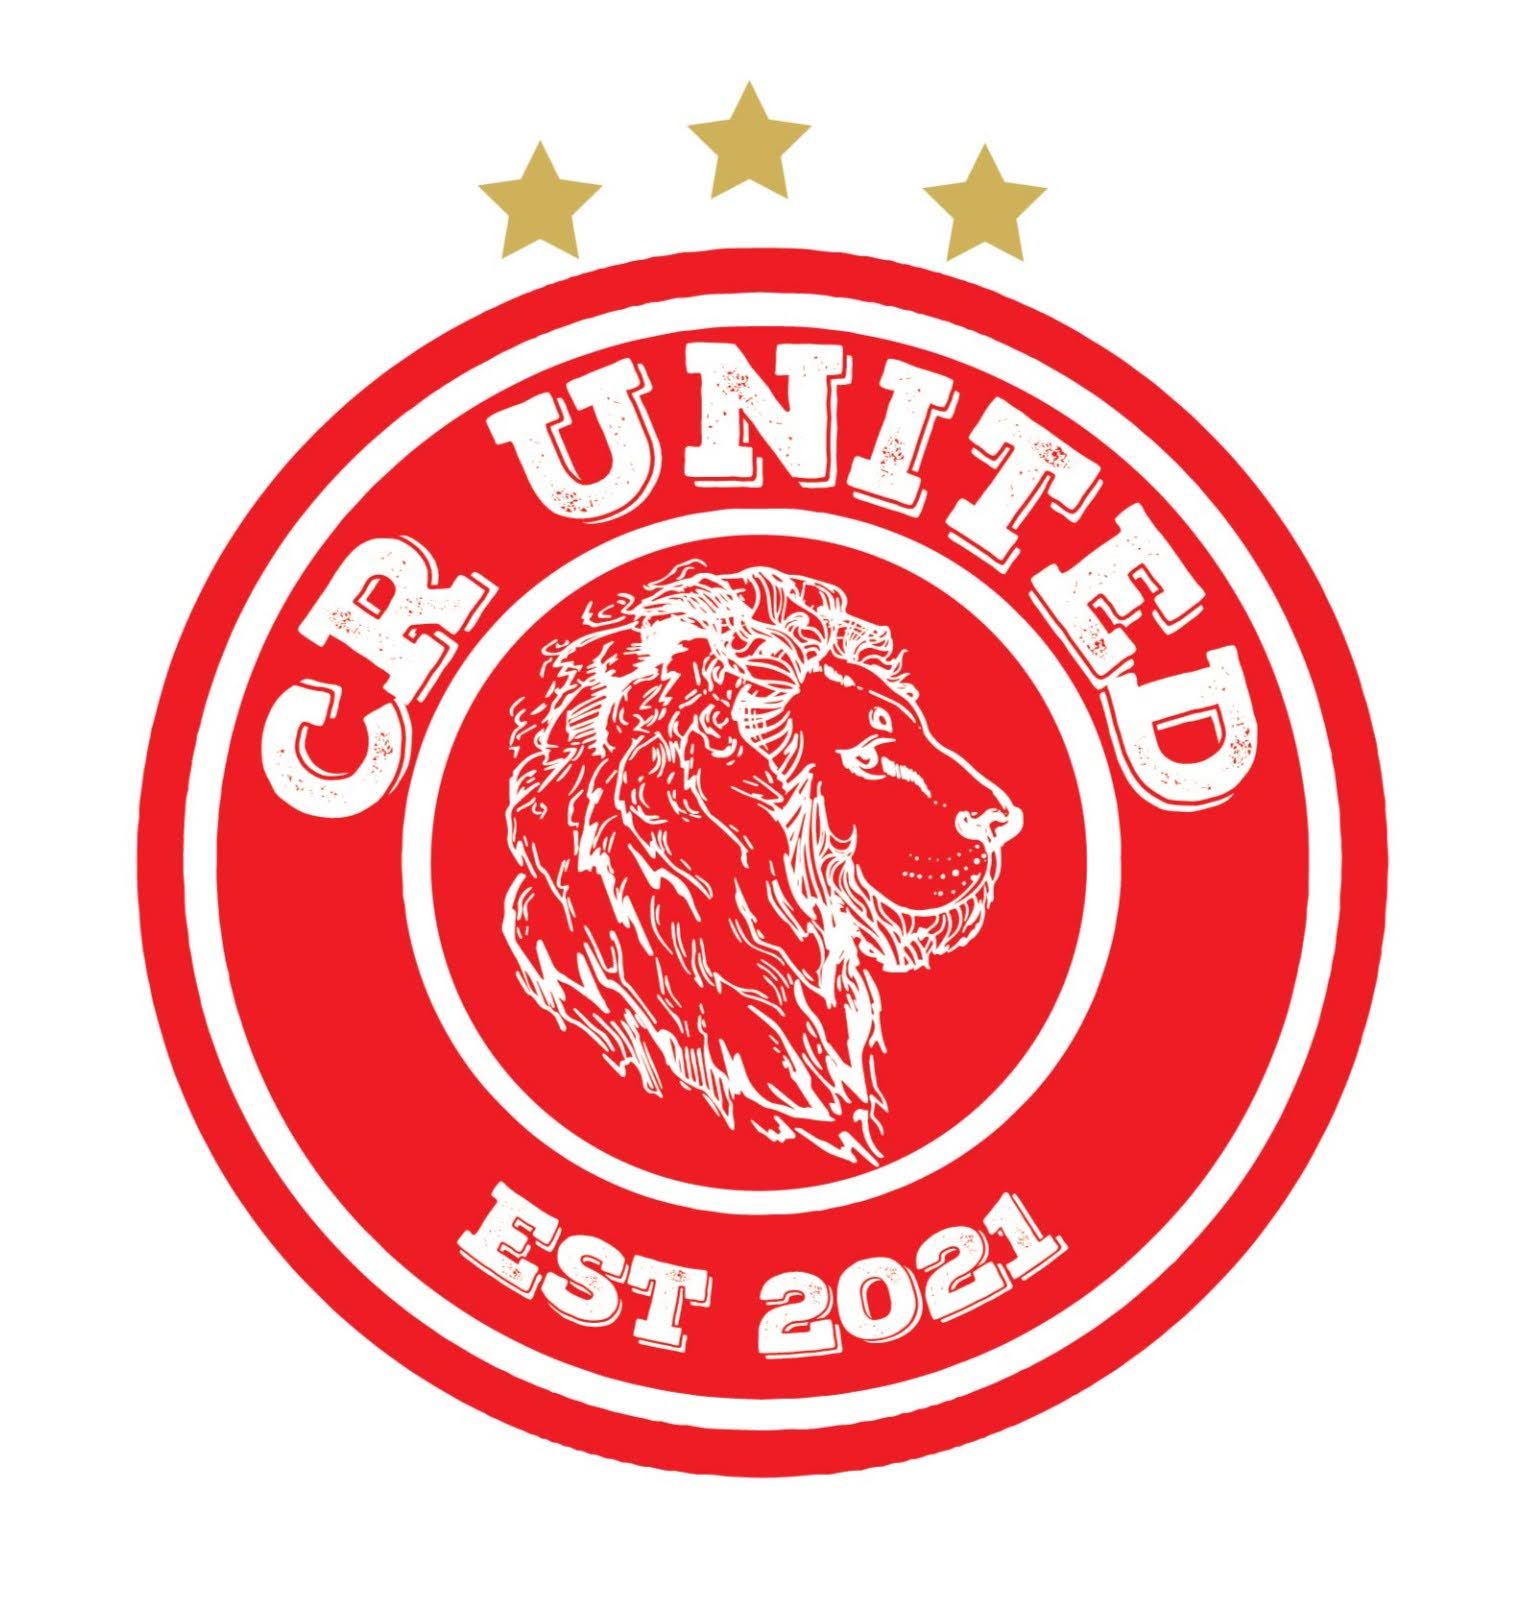 CR United Soccer Academy